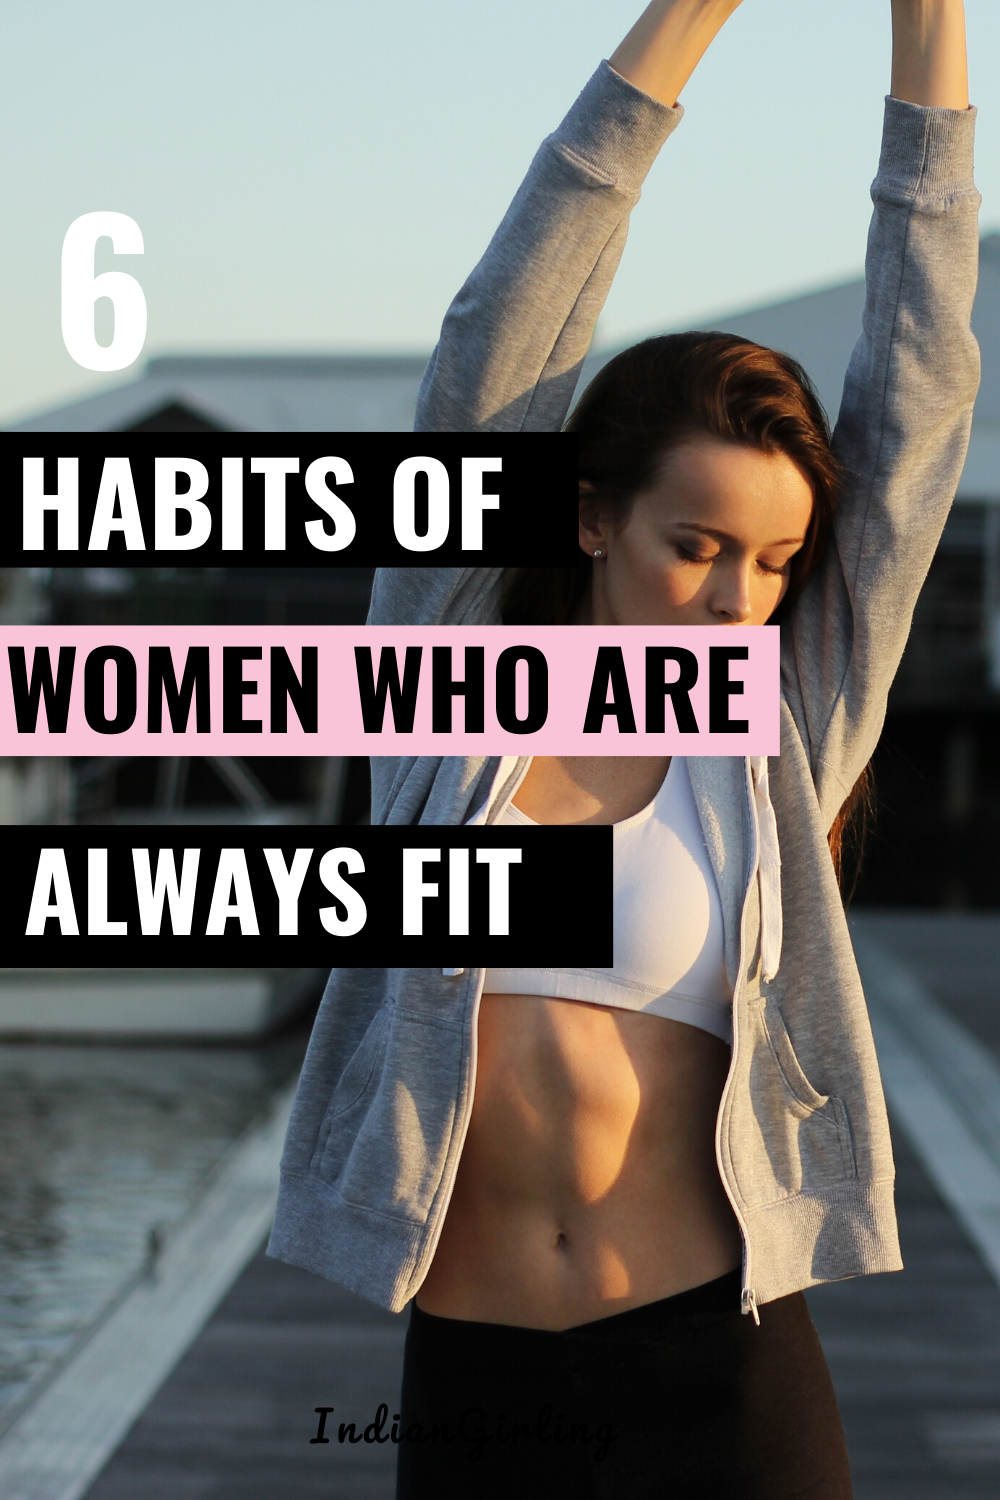 18 fitness Women shape ideas